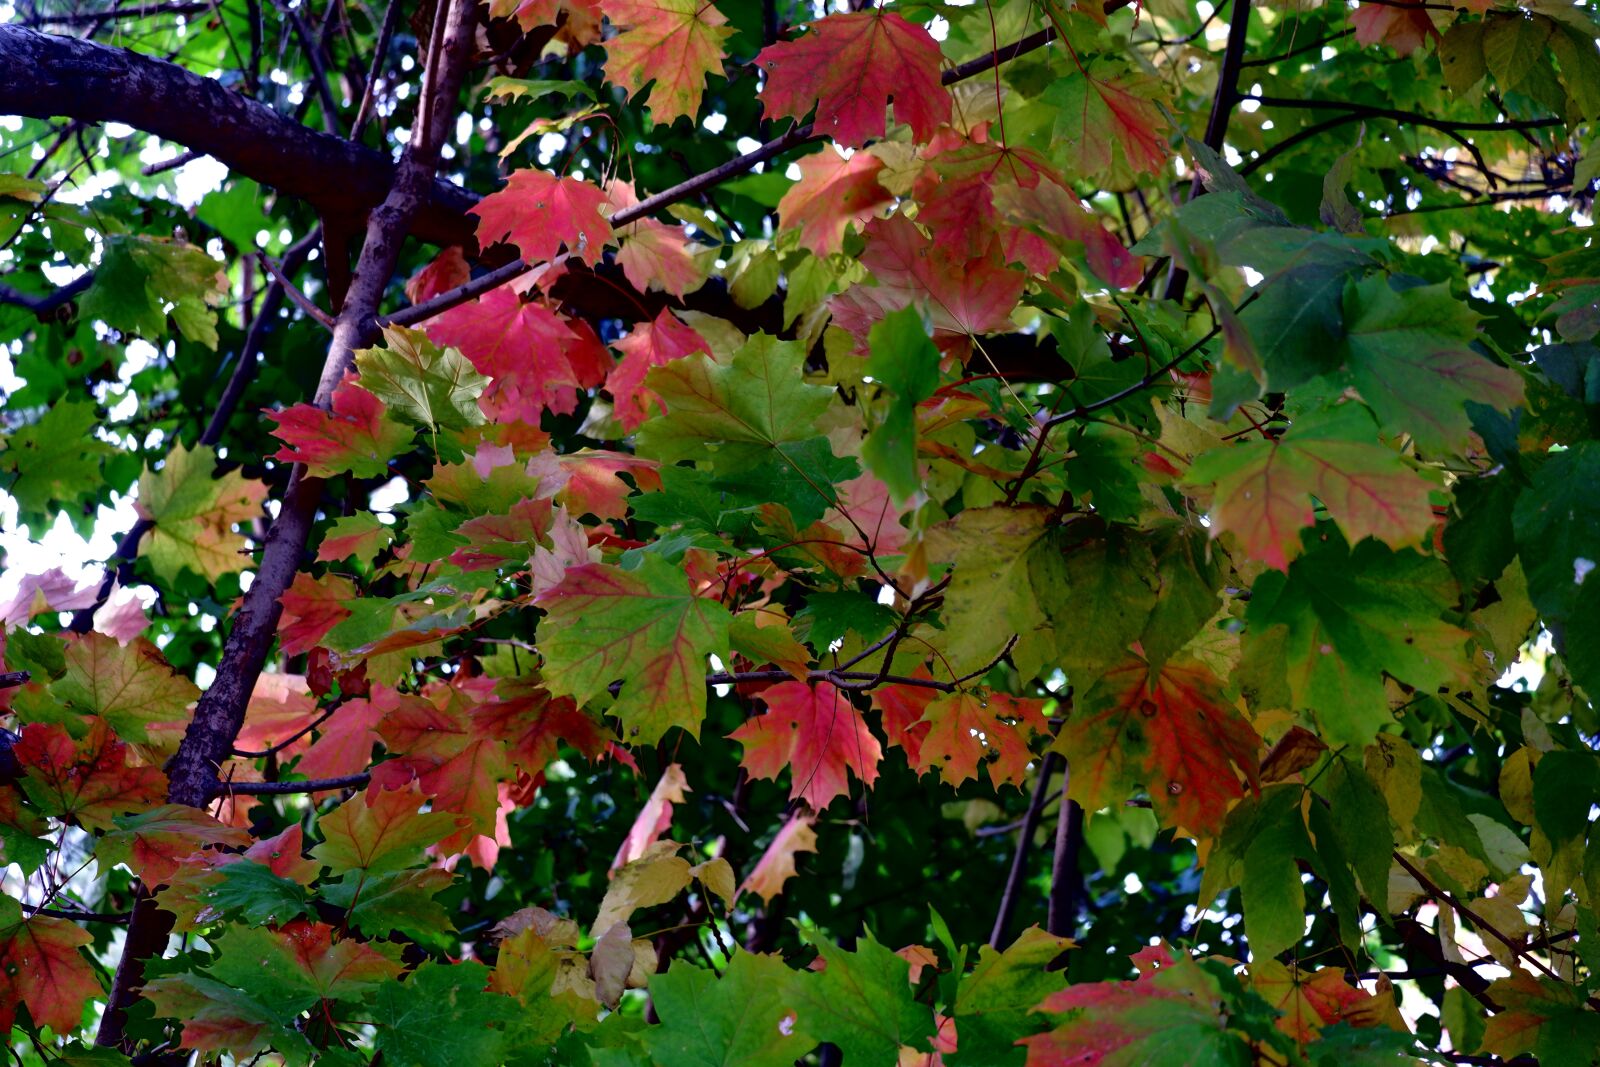 Fujifilm X-A5 sample photo. Autumn, tree, foliage photography